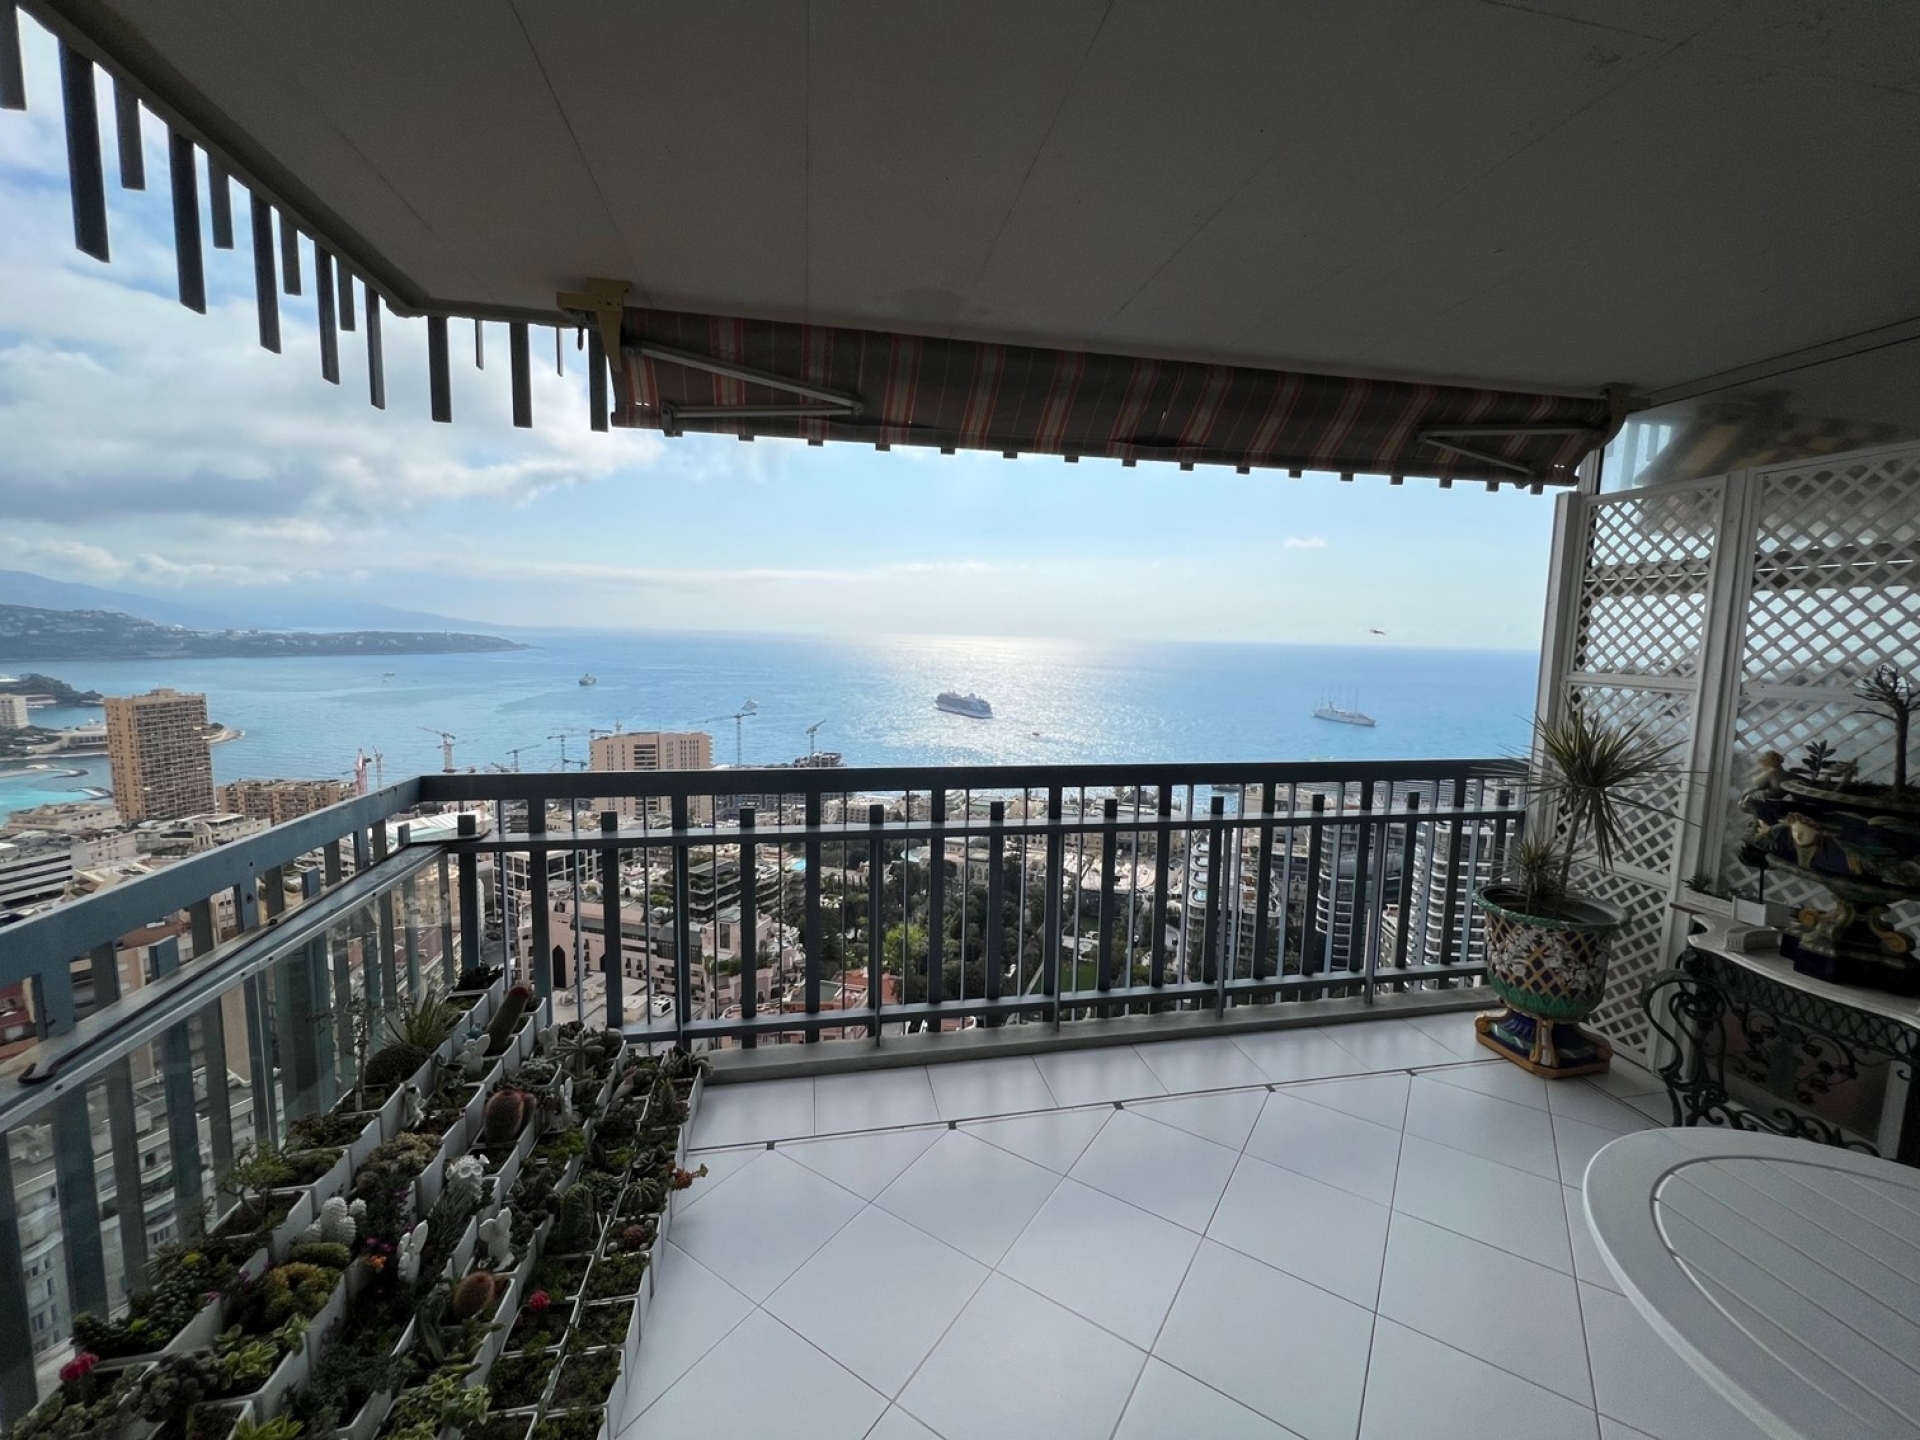 Dotta Appartement de 3 pieces a vendre - MILLEFIORI - Monte-Carlo - Monaco - imgimage3